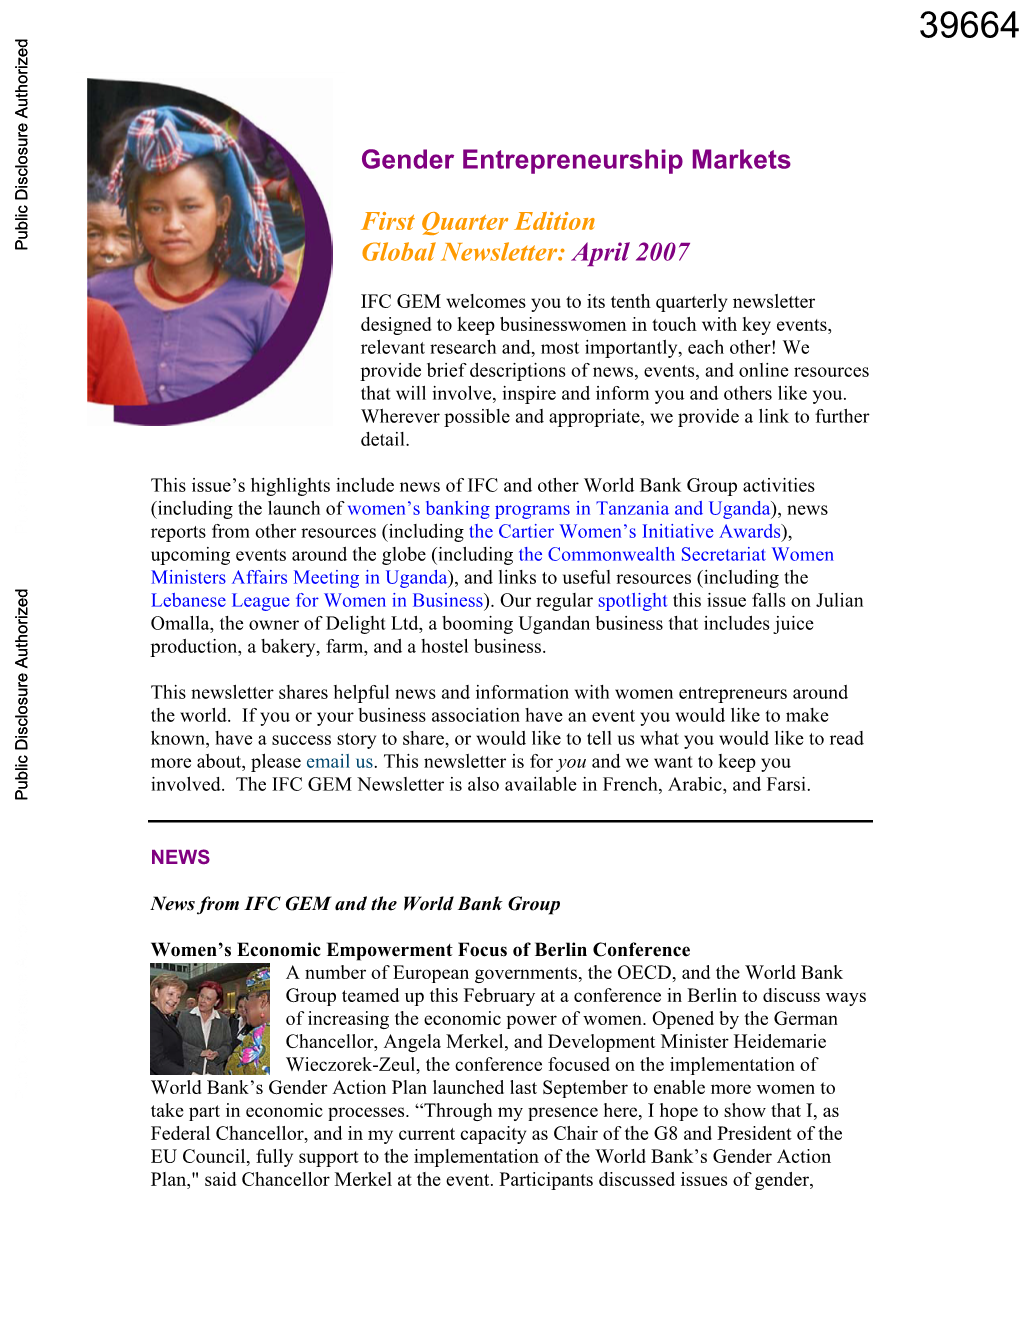 Gender Entrepreneurship Markets First